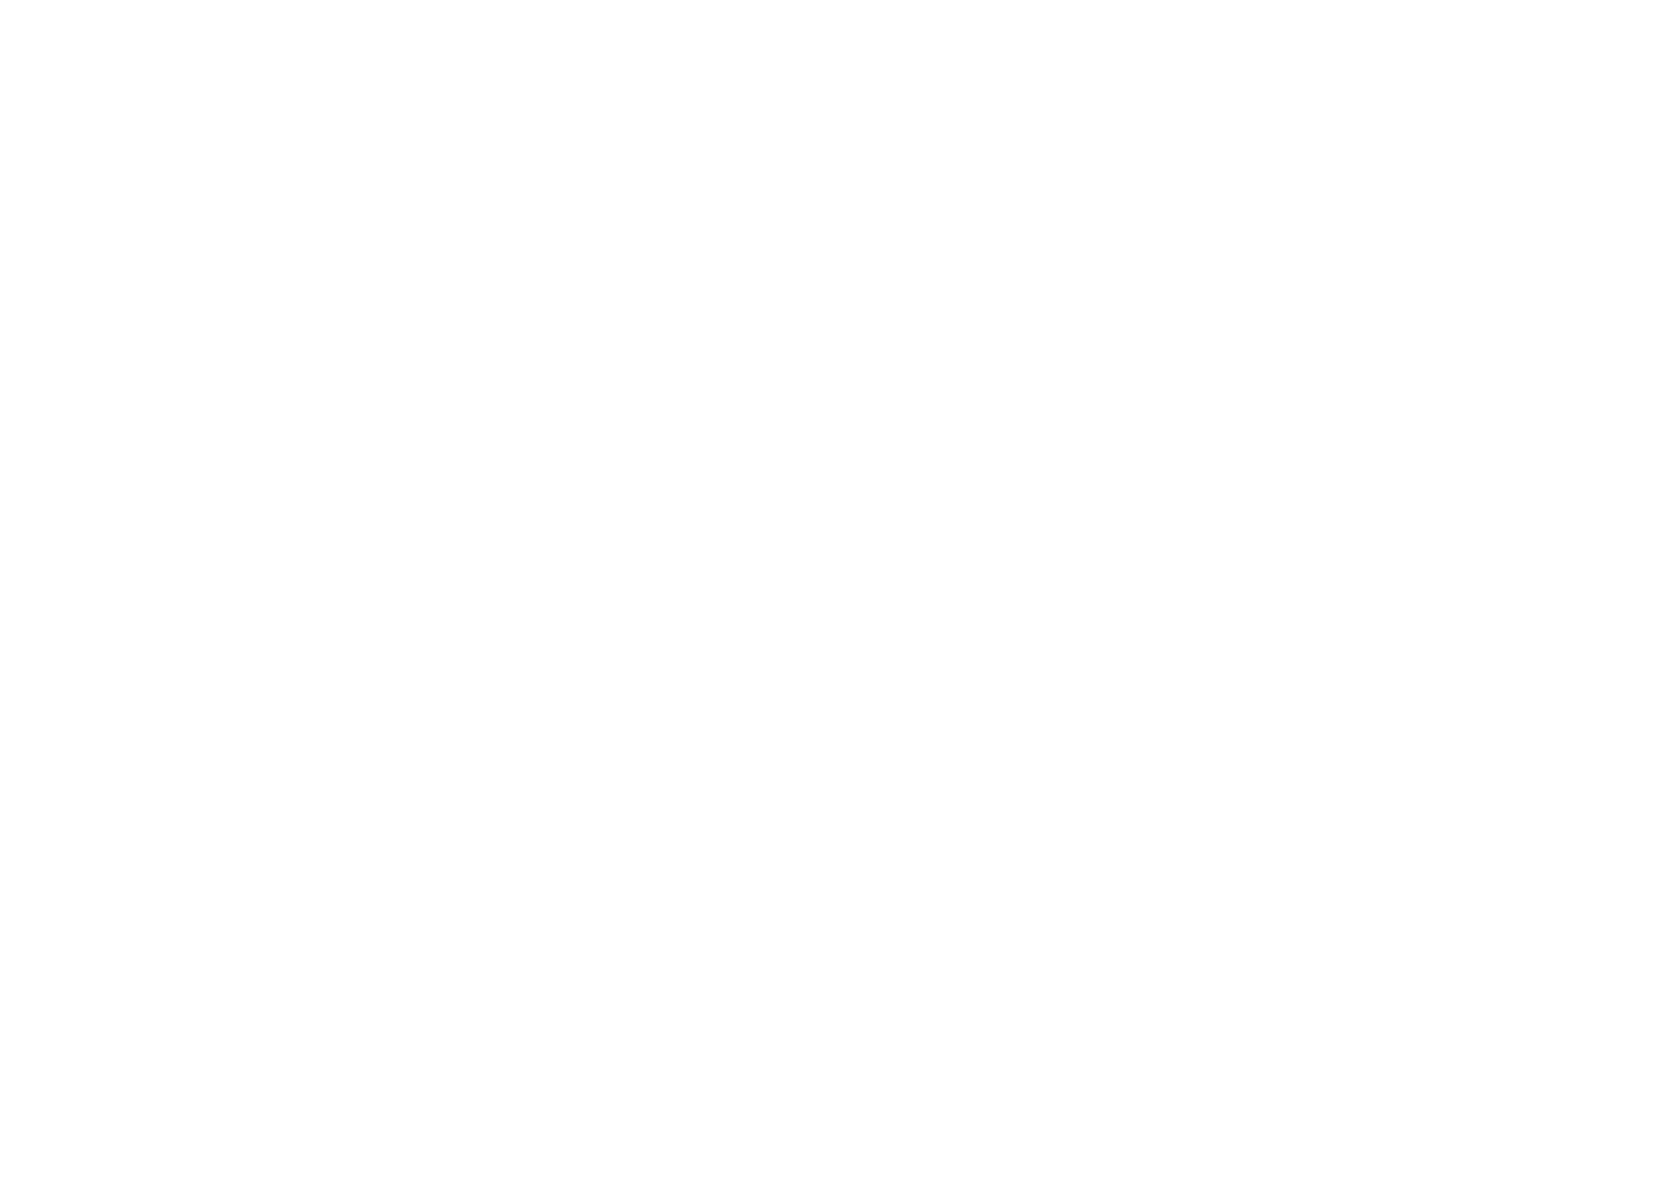 Тифлокомментарий. Цветная фотография. Парижский платок разложен на столе. Платок квадратный, в центре надпись рукописным шрифтом, вокруг надписи по кругу расположены иллюстрации парижских достопримечательностей с фигурками людей рядом: Эйфелева башня, Триумфальная арка, фасад Собора парижской богоматери, красная мельница «Мулен руж», церковь Сакре Кер, Парижская опера, Дворец инвалидов, веранда летнего кафе. Возле каждой иллюстрации по несколько белых или красных цветков. Иллюстрации выполнены черным контуром с акцентами белым контуром, фигурки людей красного цвета. Платок подшит по краю, он в отличном состоянии, со следами от сгибов.